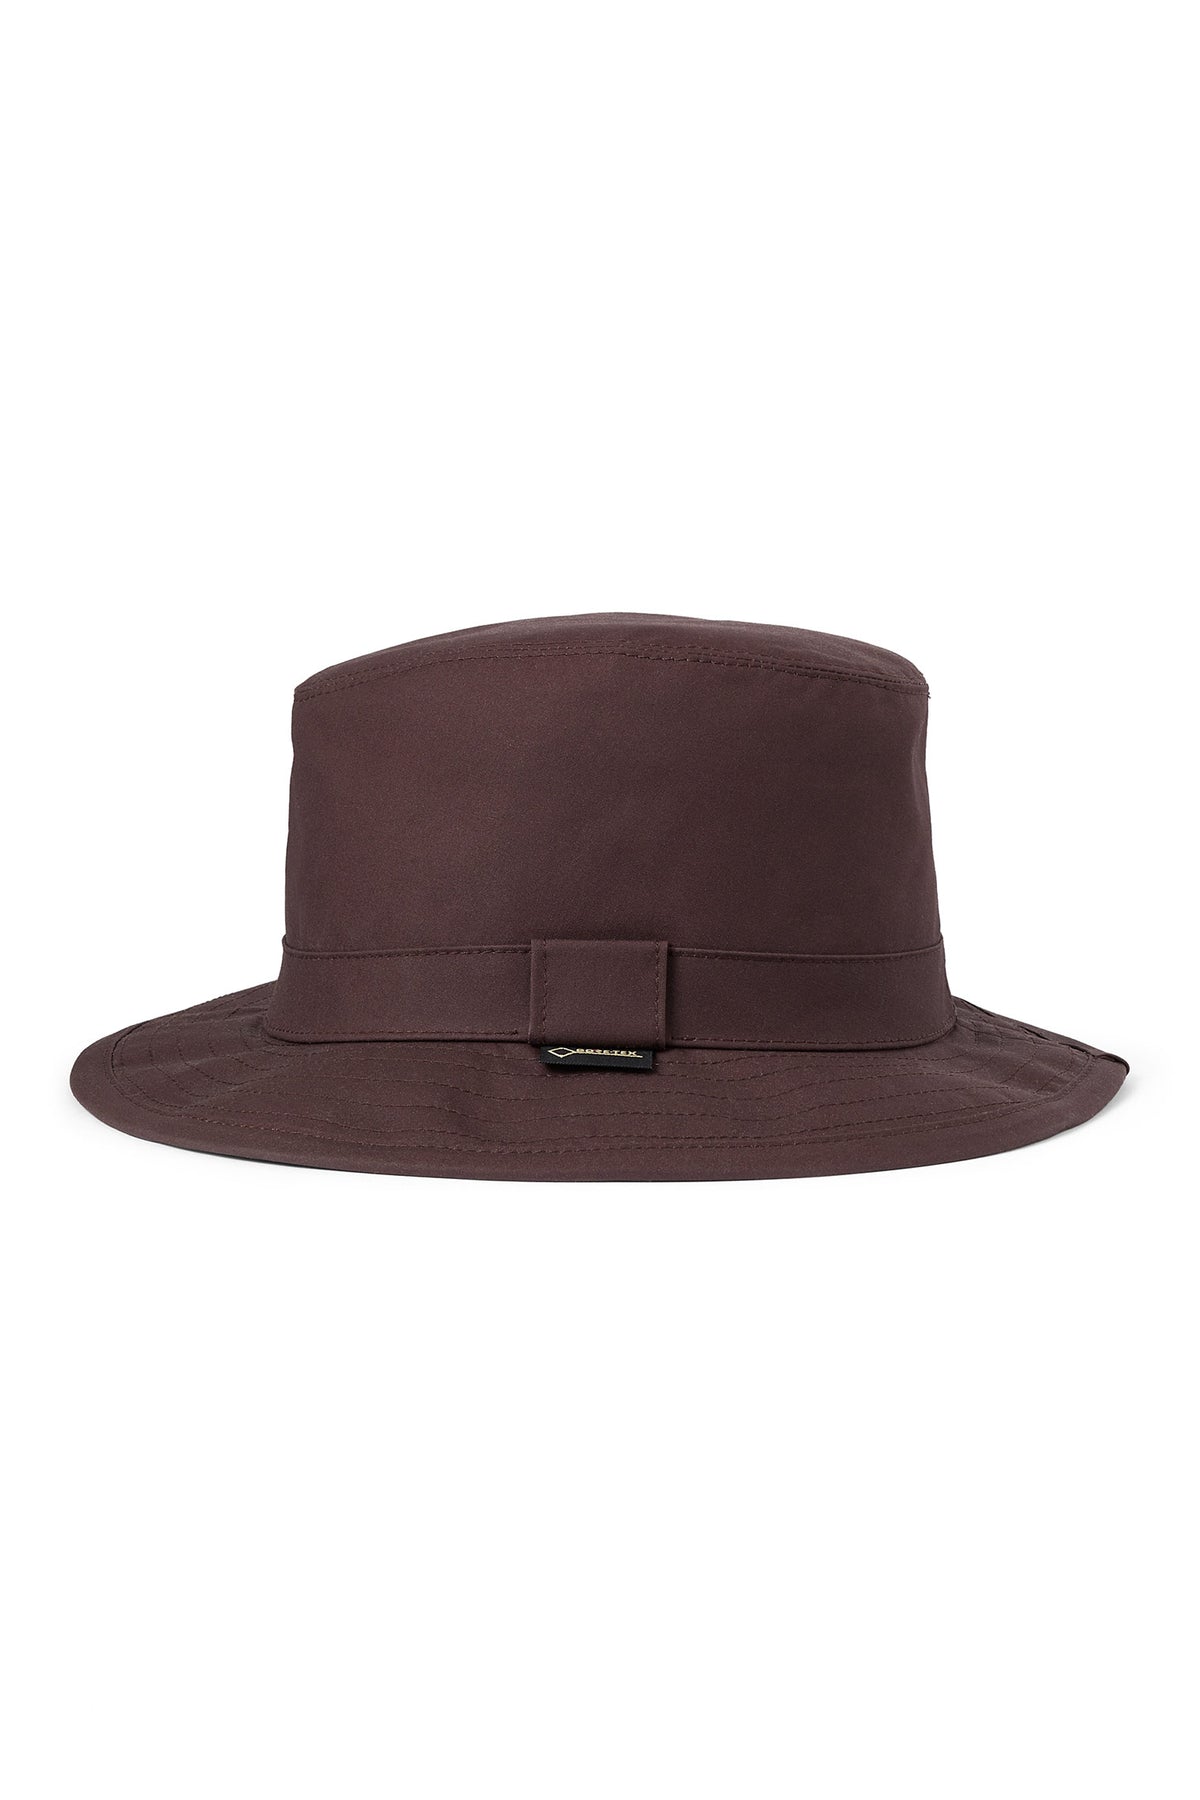 Tay GORE-TEX Hat - Lock & Co. Hats for Men & Women